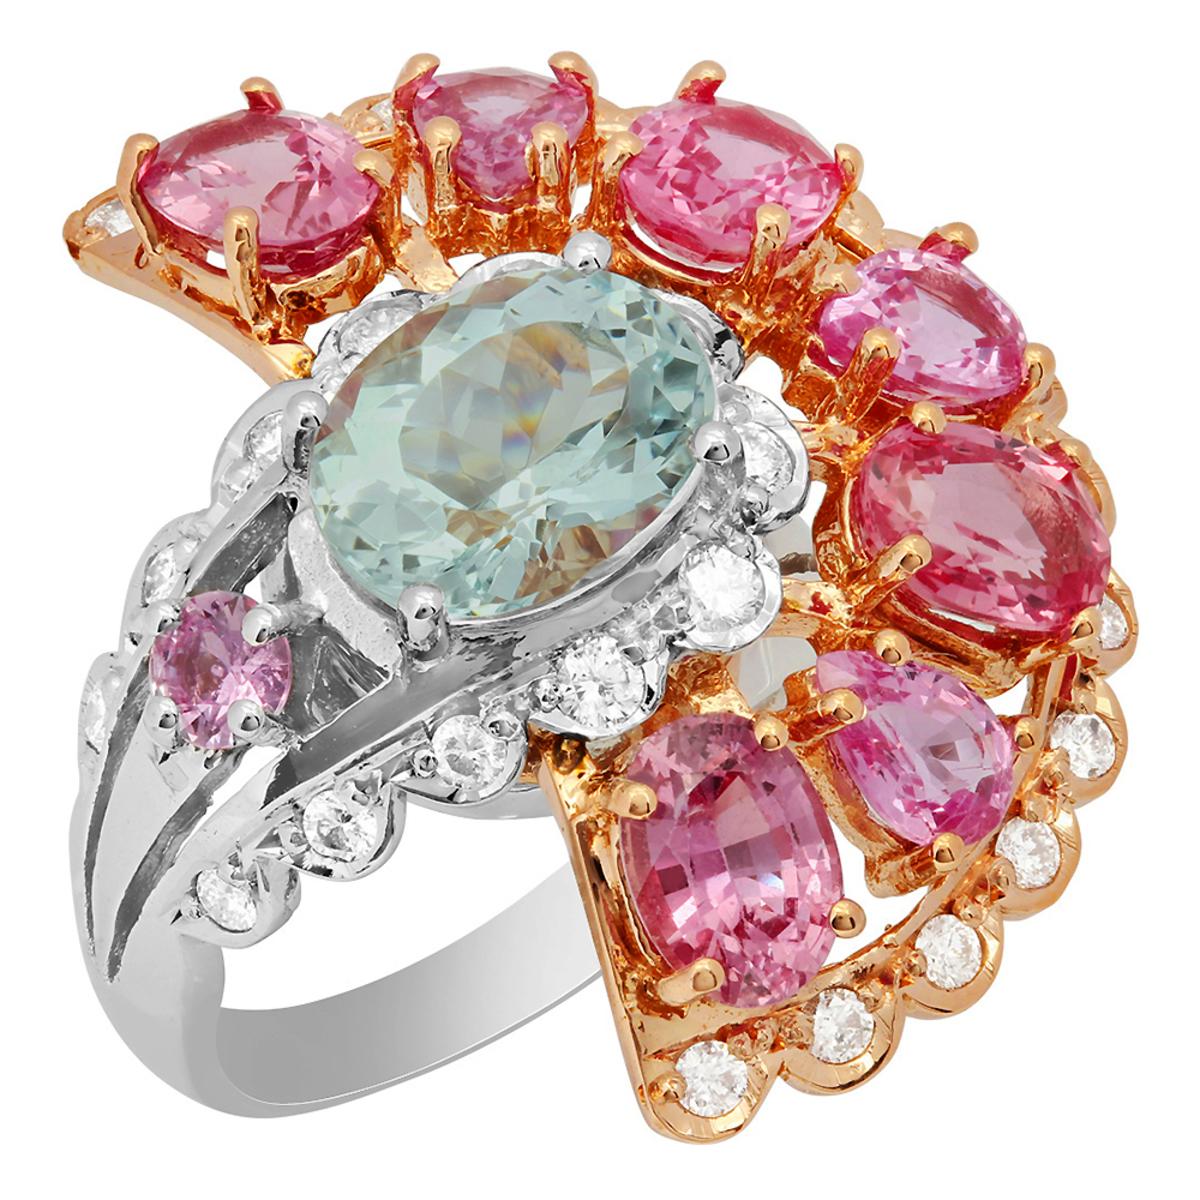 14k White & Rose Gold 2.45ct Aquamarine 5.59ct Pink Sapphire 0.82ct Diamond Ring